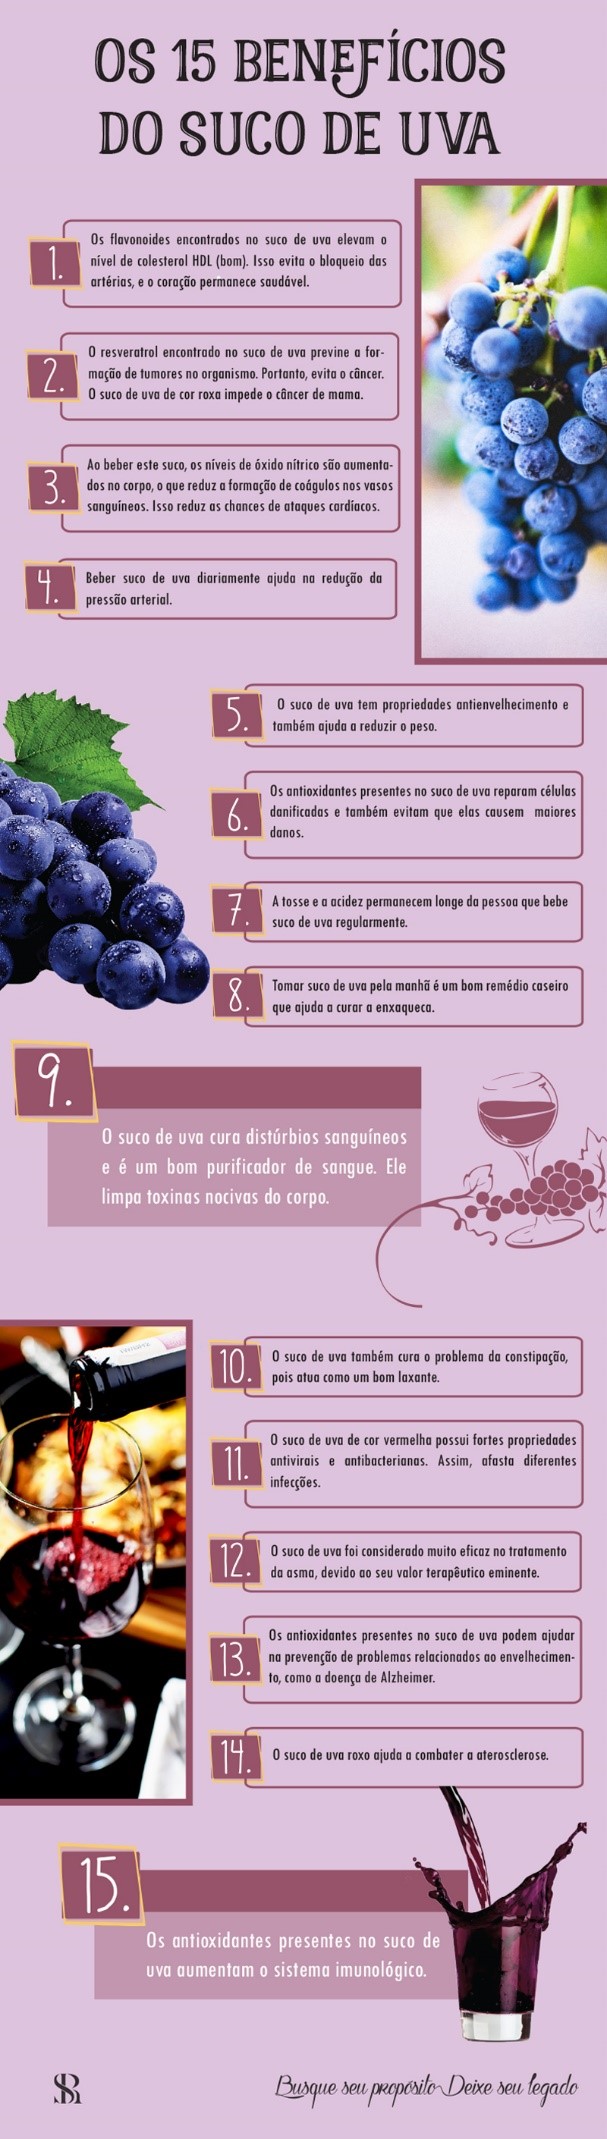 Suco de uva - Veja os benefícios do suco de uva